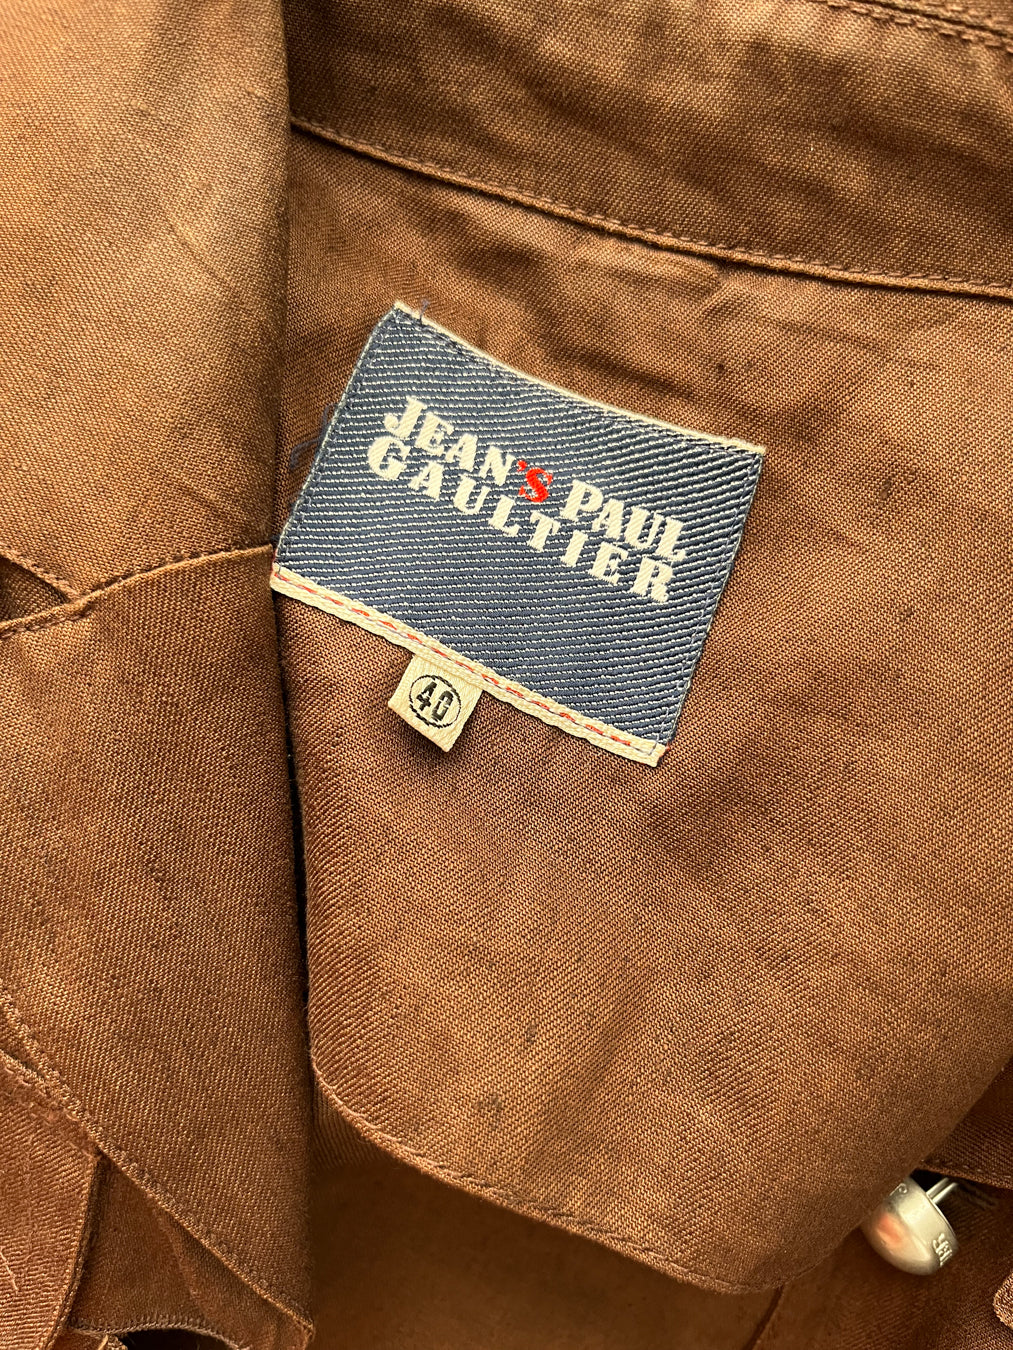 Jean's Paul Gaultier - Brown Linen Saharienne w/ Silver Details